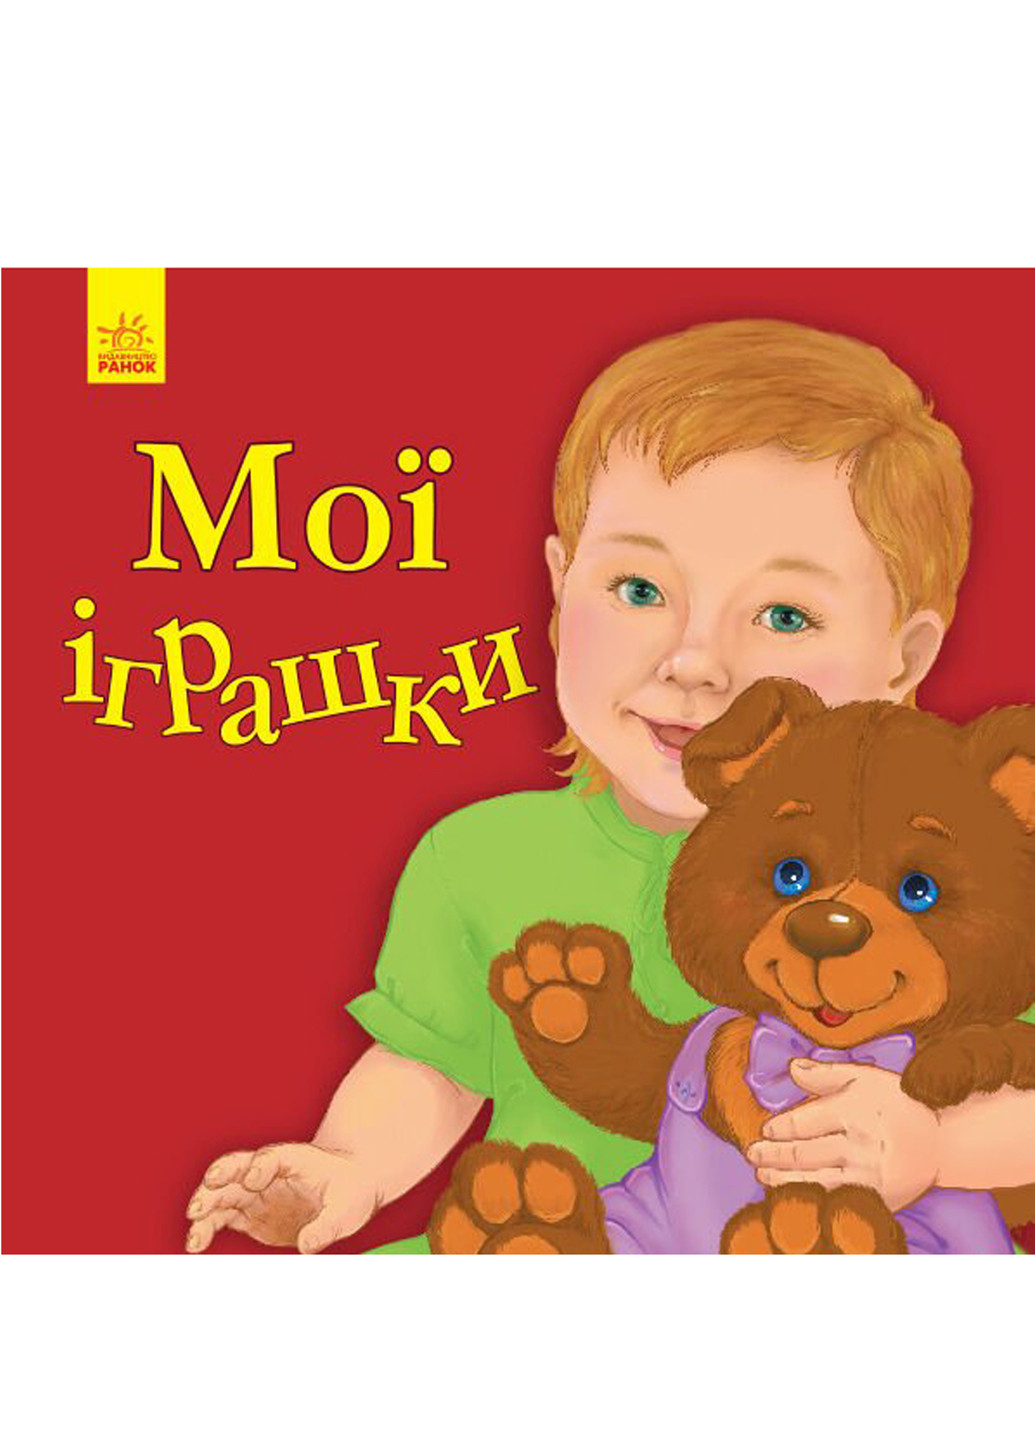 Книга мои игрушки Ранок украинский язык РАНОК (252260125)